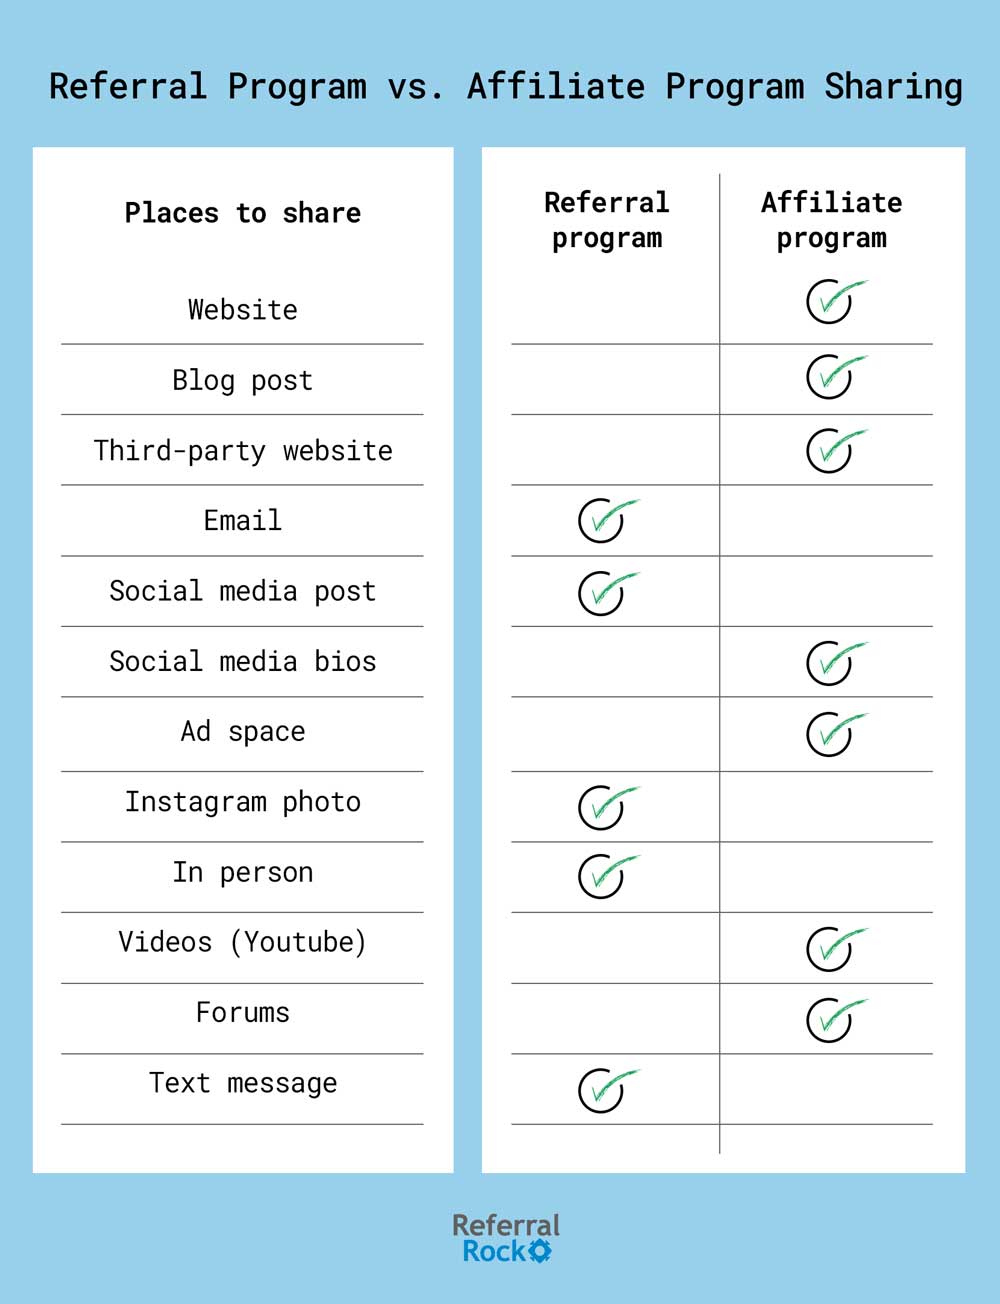 referral program vs affiliate program sharing: where affiliate vs referral links are typically shared